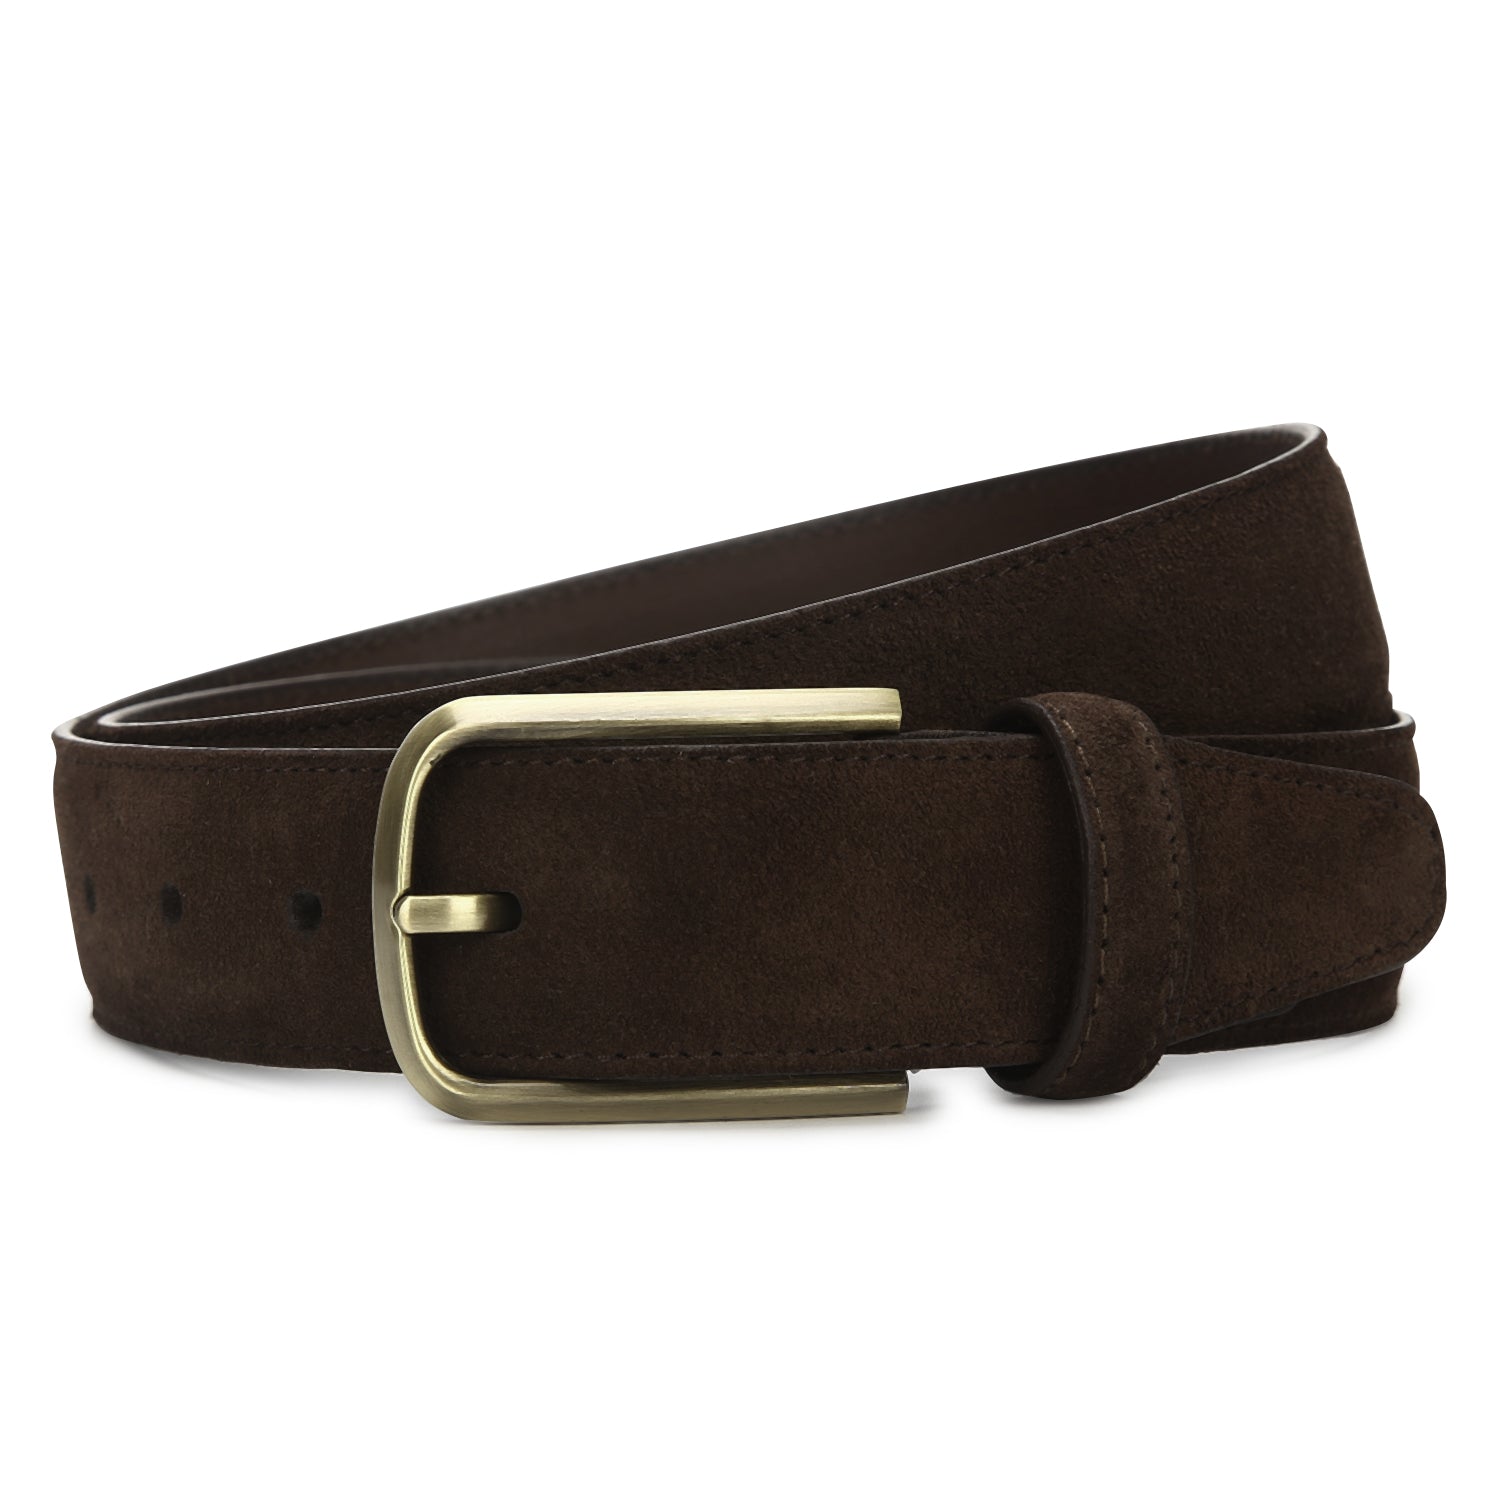 Scott Allan Collection Brown & Black Mens Belt - Men's Belts - Suede  Leather Belt for Men - 36, 38, 40